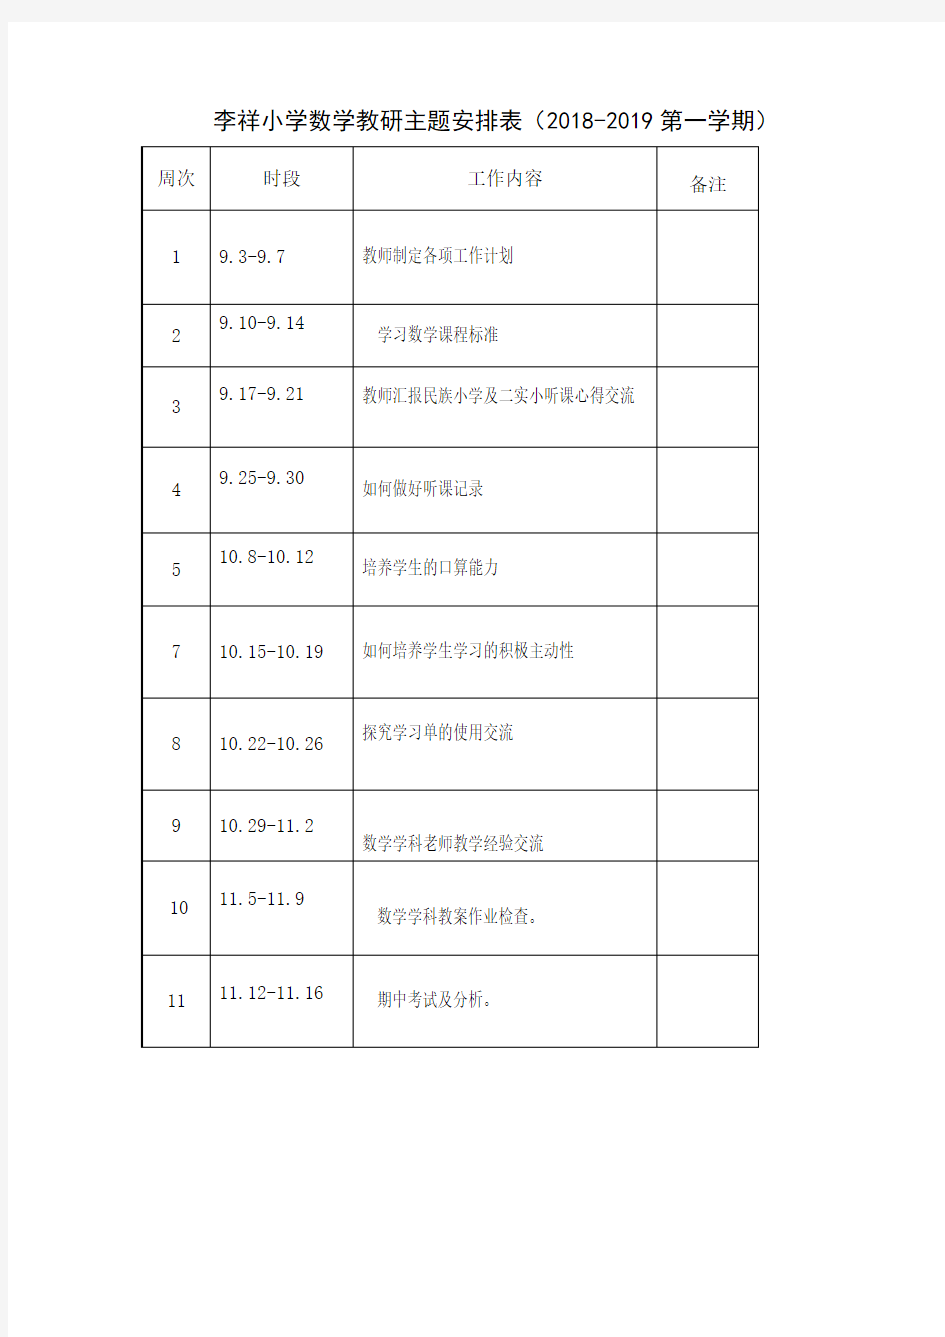 李祥2018-2019第一学期小学数学教研组活动安排表